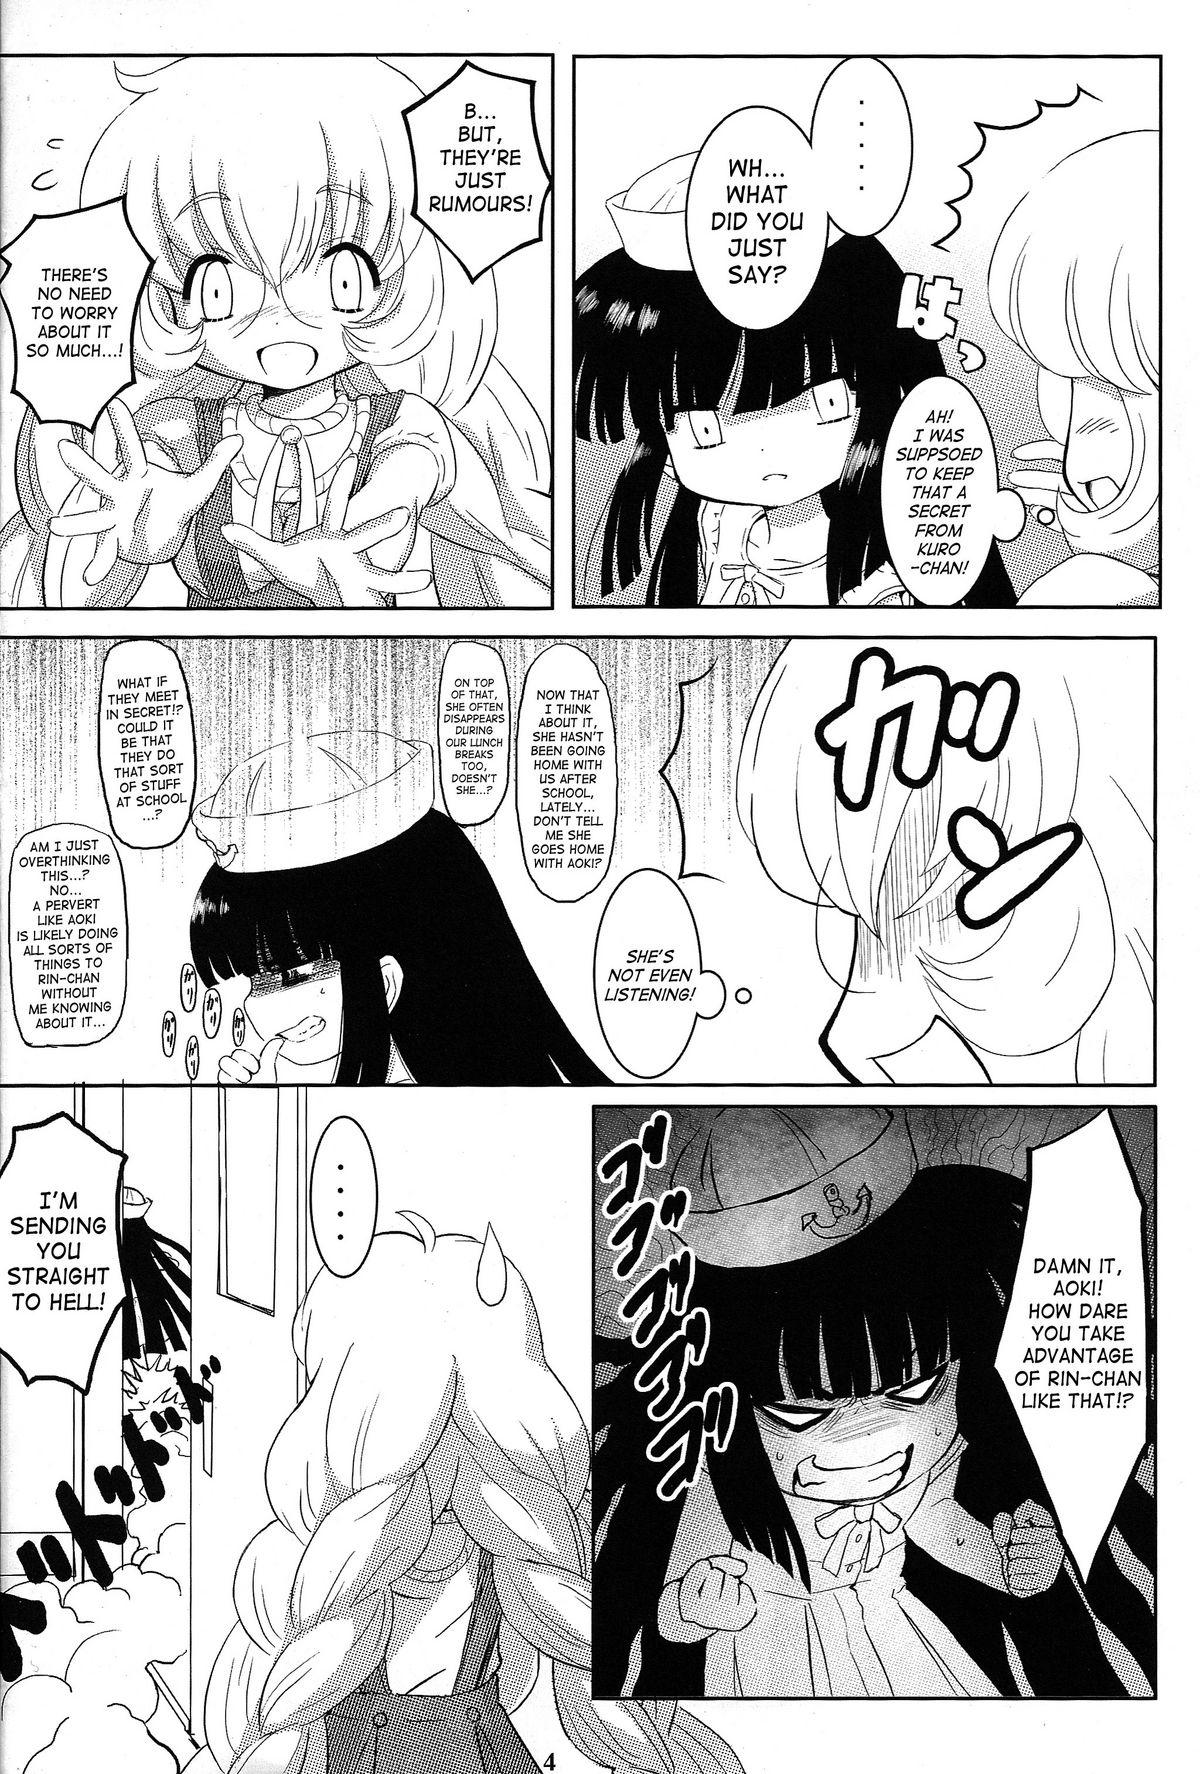 Anal Porn Kuro Masterpiece War! - Kodomo no jikan Teasing - Page 3